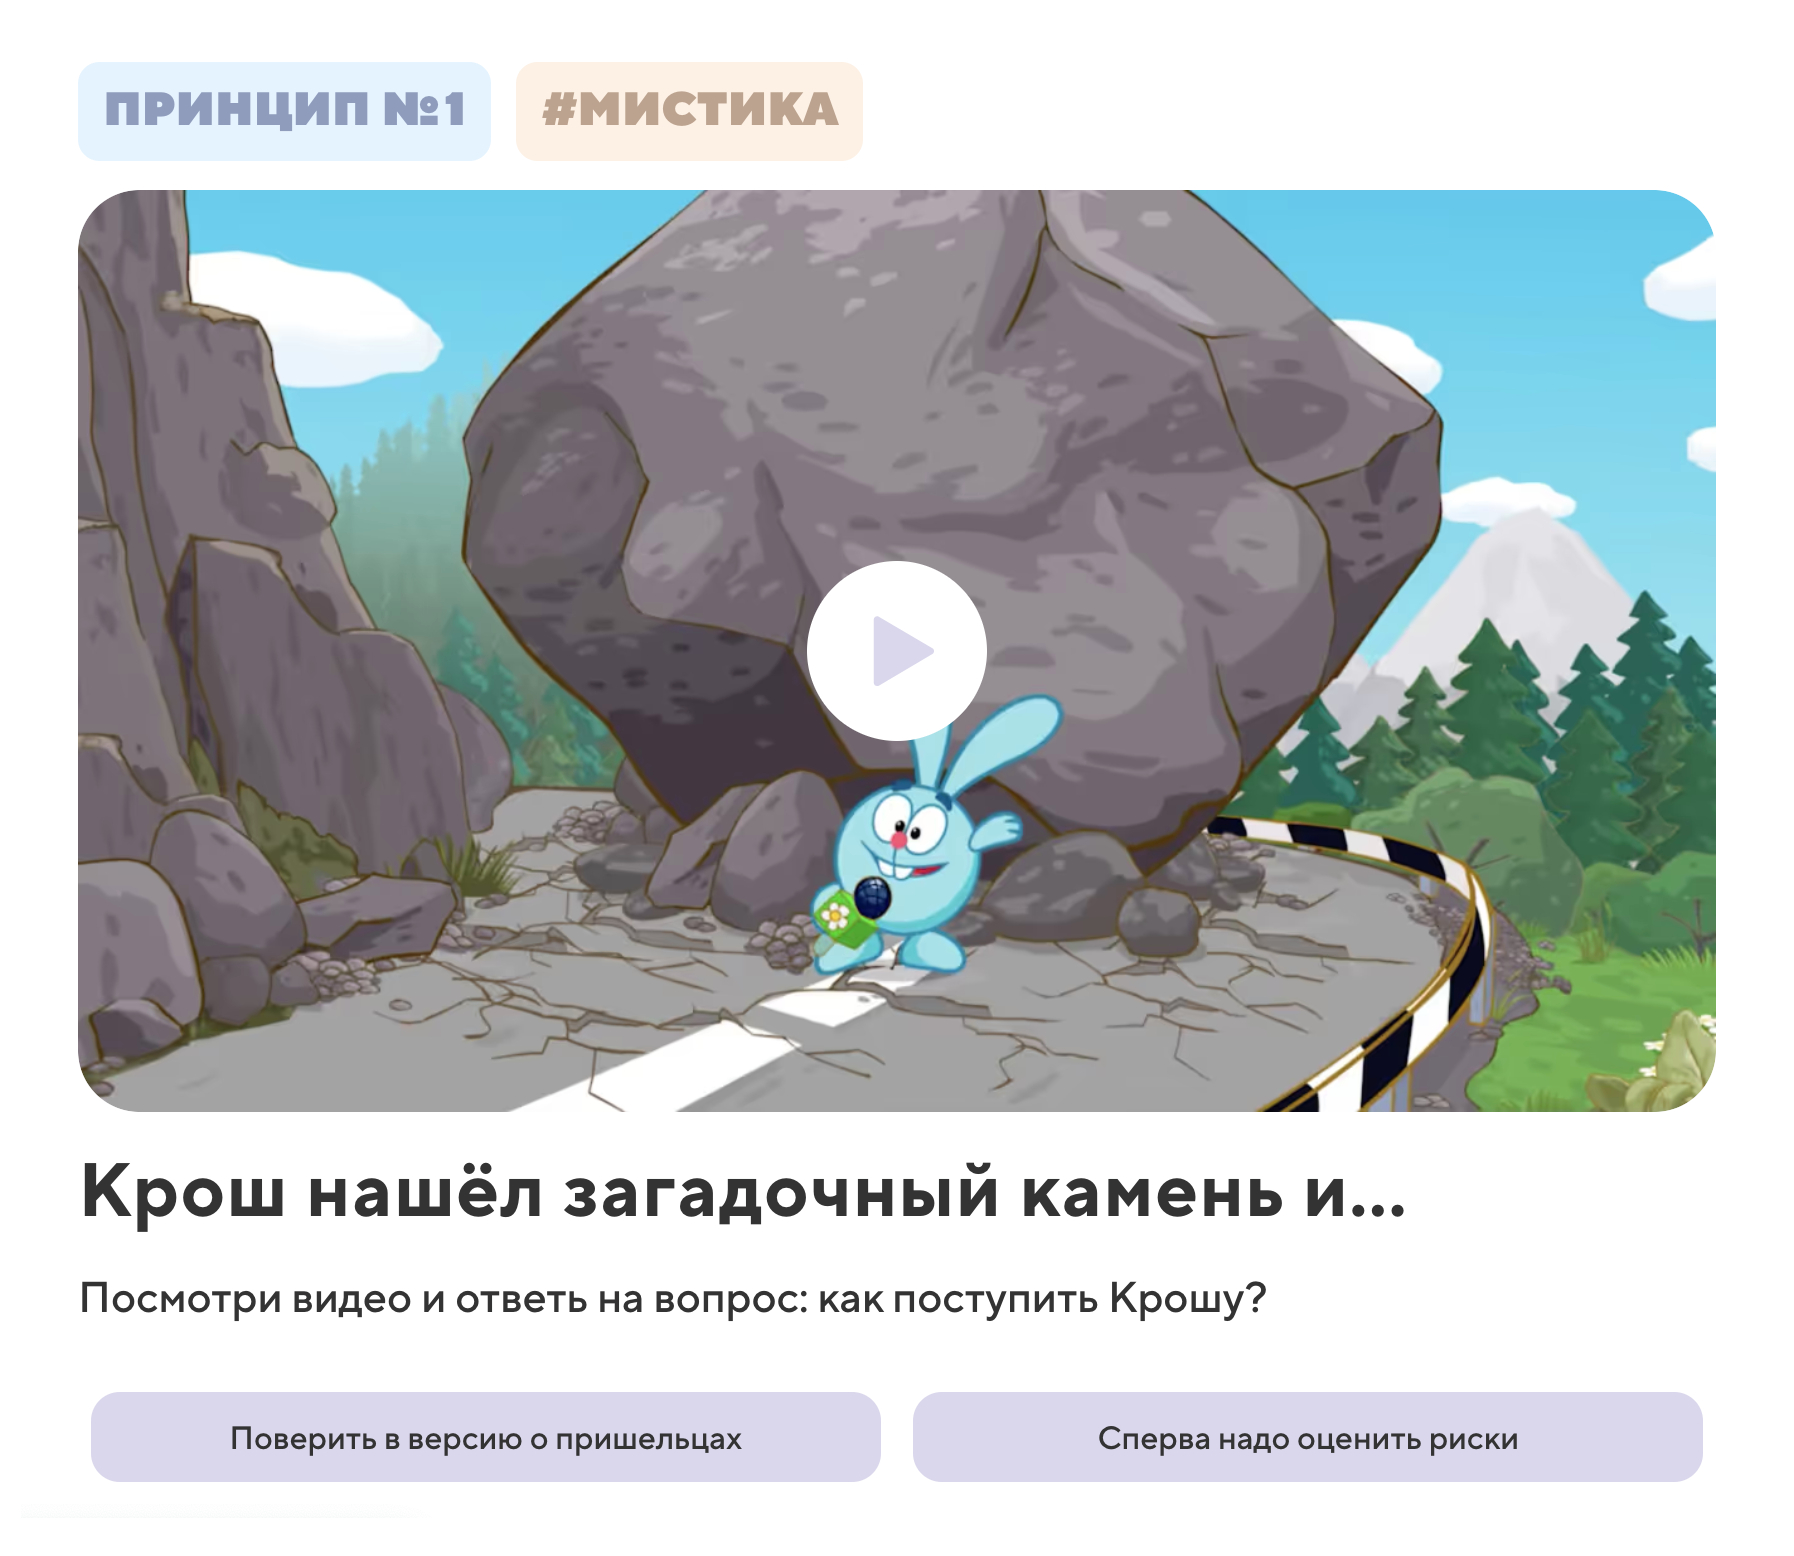 Один из интерактивных эпизодов со смешариками: ребенку придется сделать выбор, чтобы мультик продолжился. Источник: smeshariki.tinkoff.ru